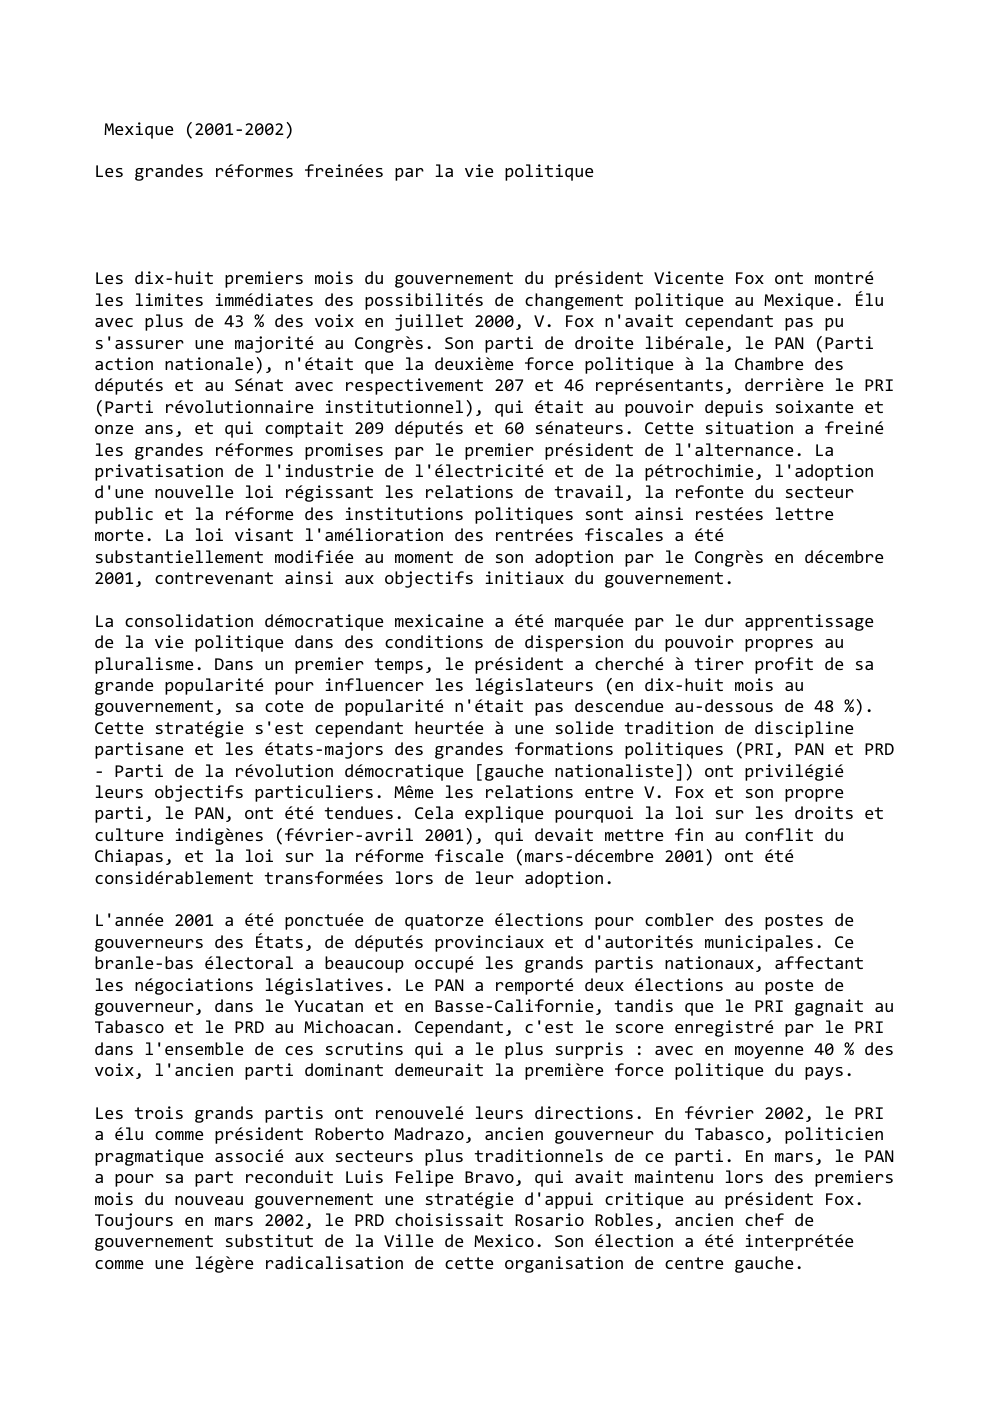 Prévisualisation du document Mexique (2001-2002)
Les grandes réformes freinées par la vie politique

Les dix-huit premiers mois du gouvernement du président Vicente Fox...